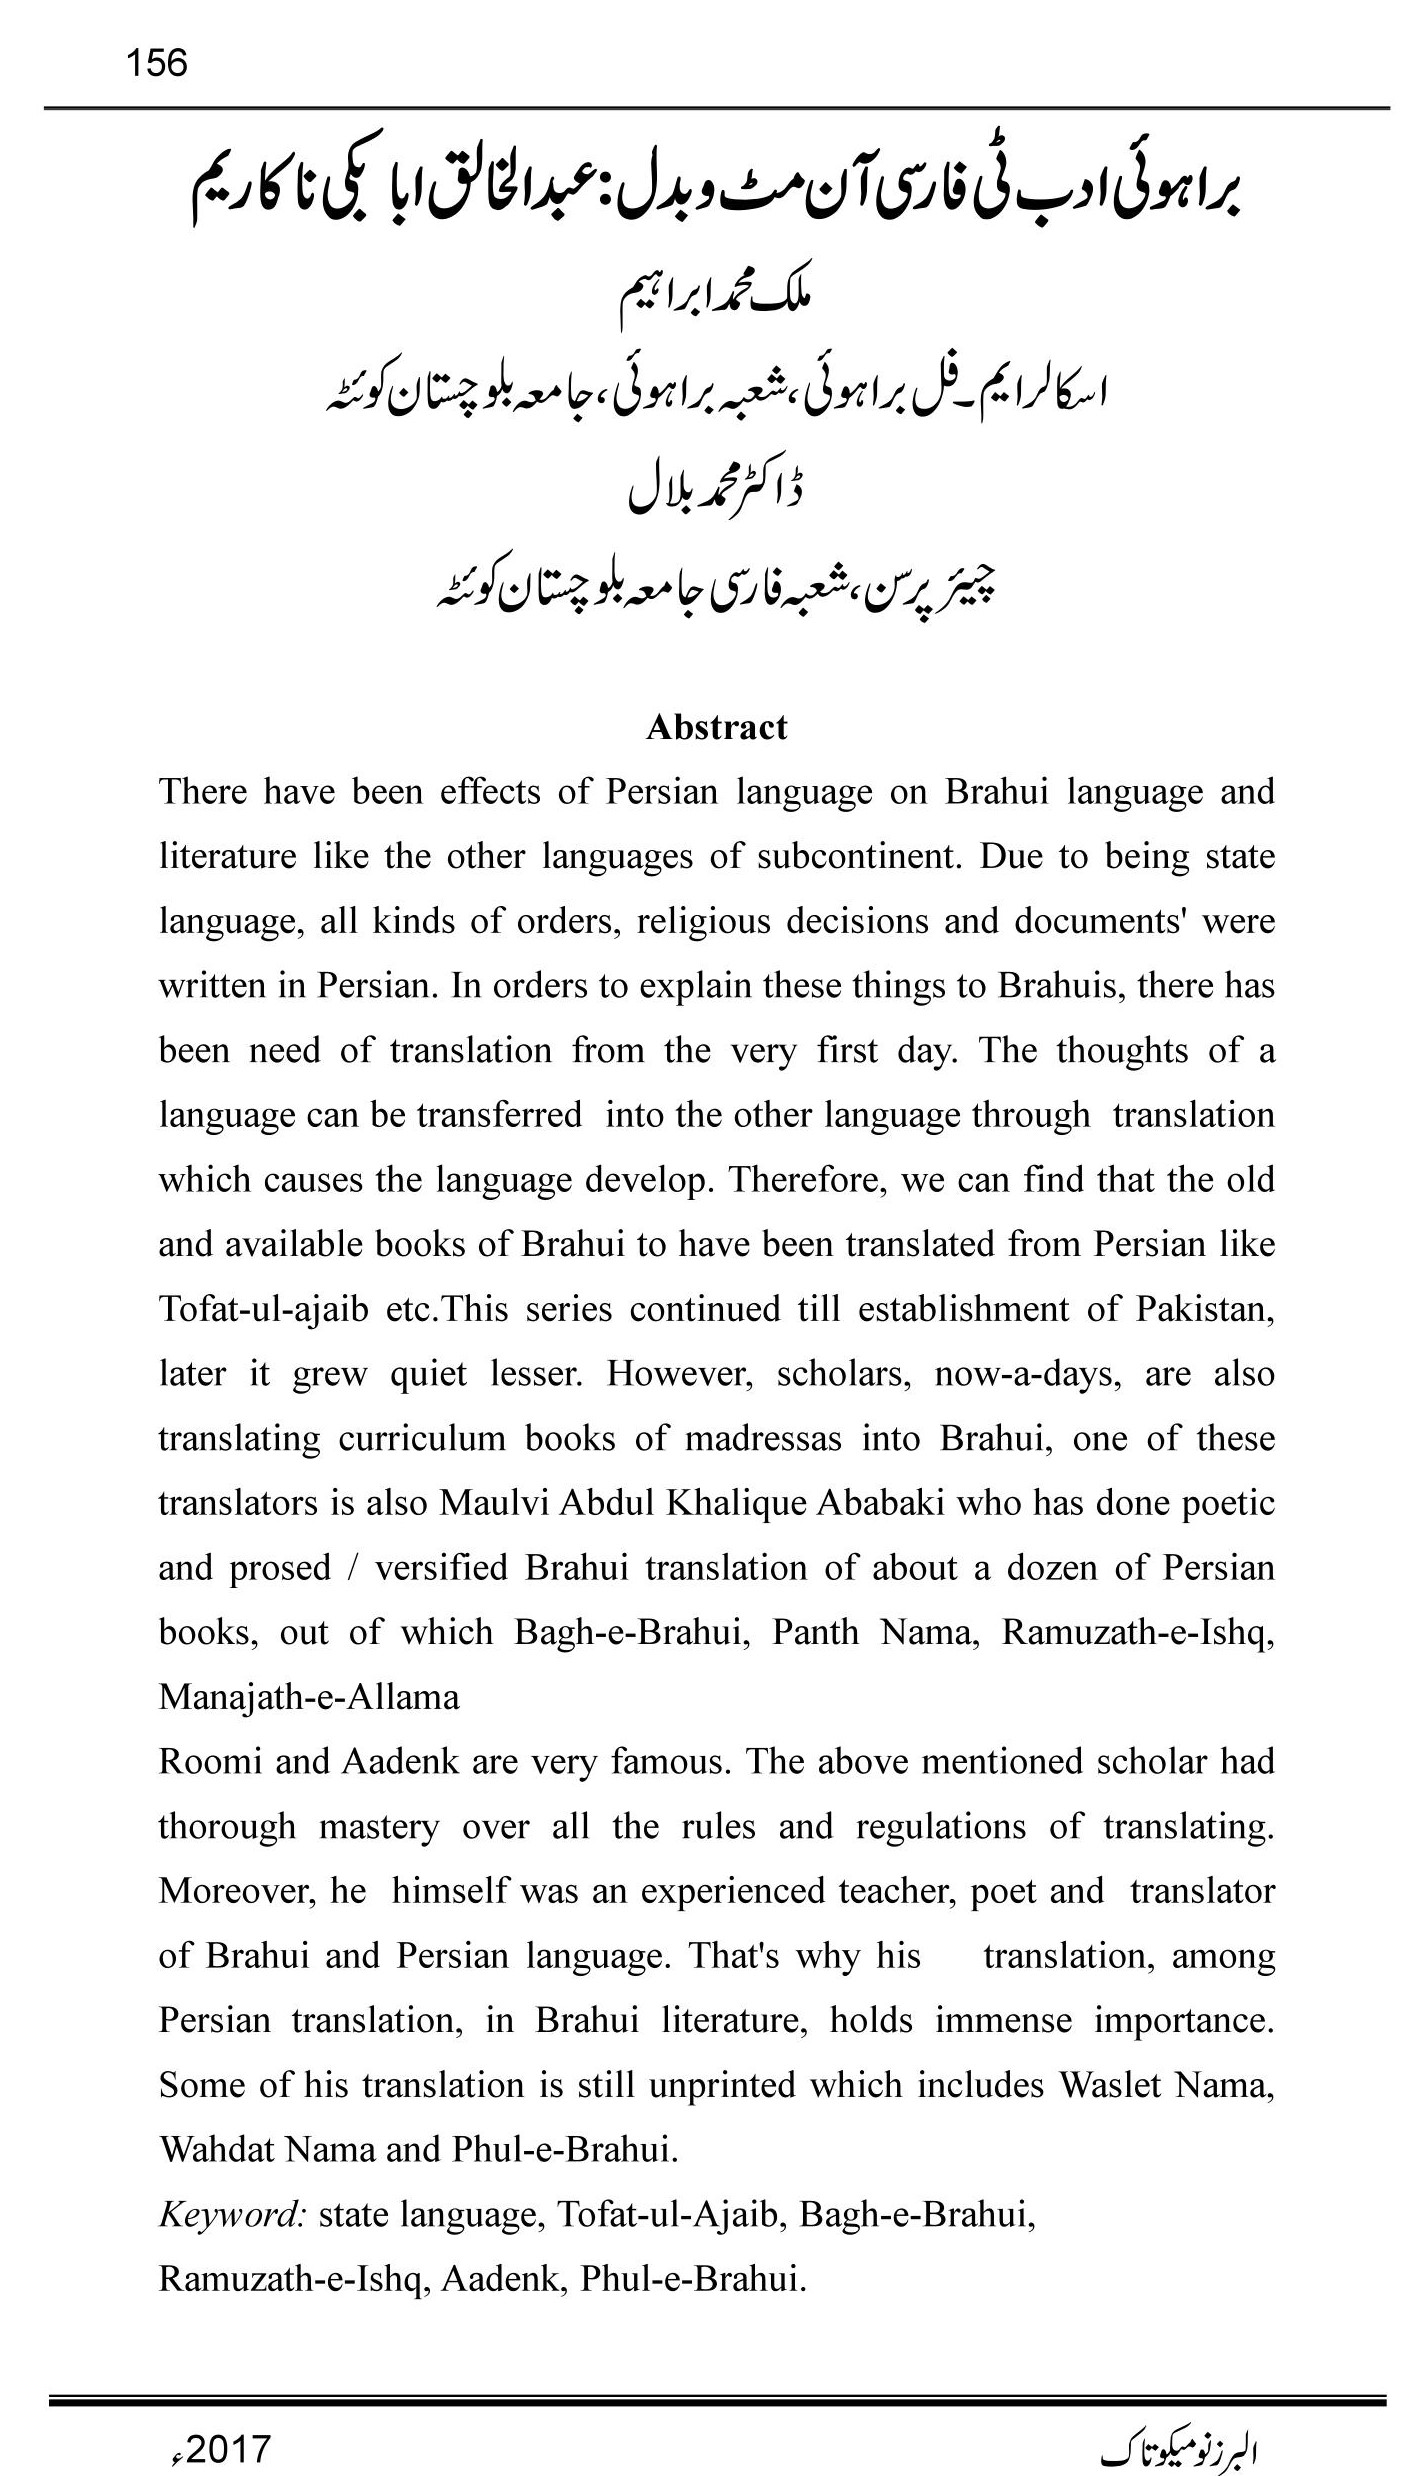 براہوئی ادب ٹی فارسی آن مٹ و بدل: عبد الخالق ابابکی نا کاریم 